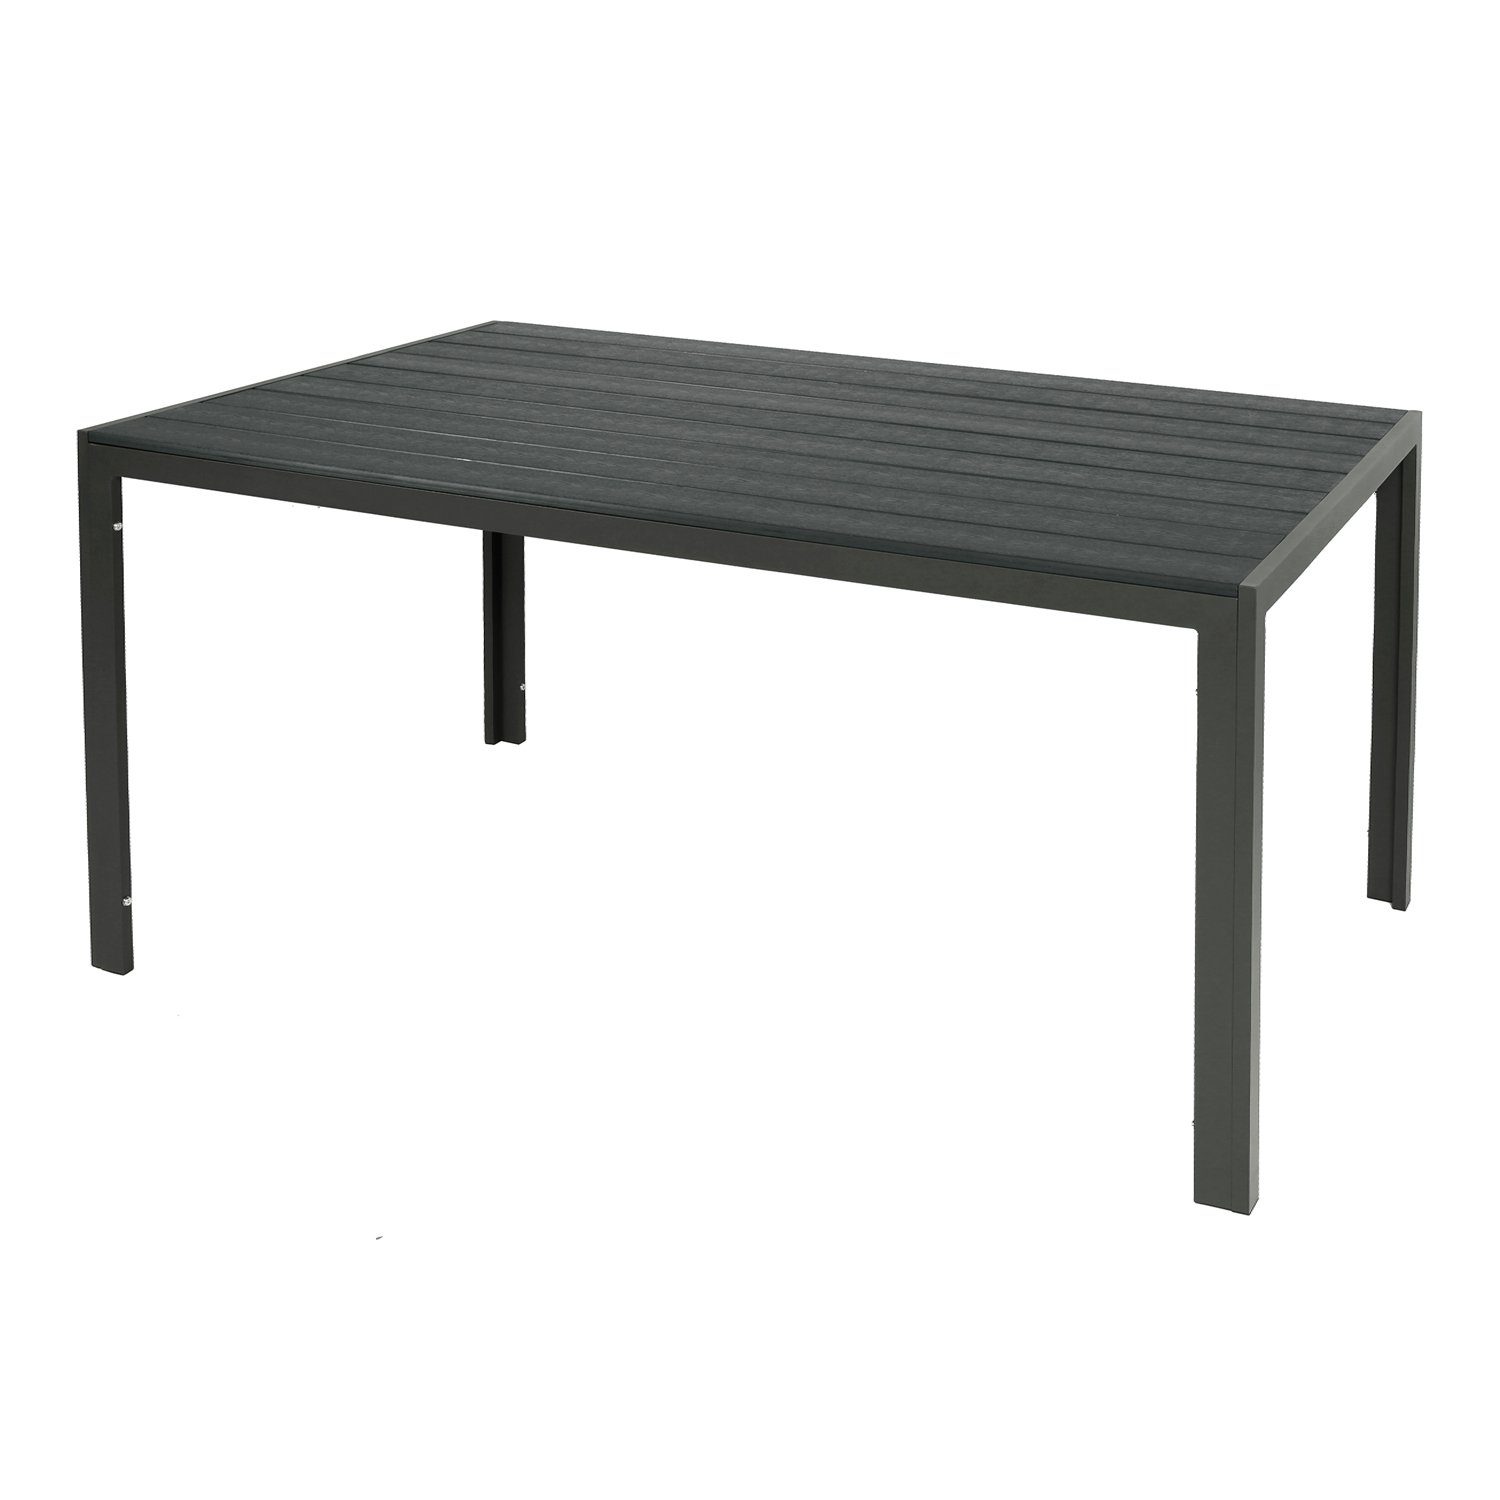 6x Tisch 1x Mojawo Stapelstuhl + 7-teilig Gartengarnitur Anthrazit/Grau/Beige Sitzgarnitur 160x90cm Essgruppe Polywood